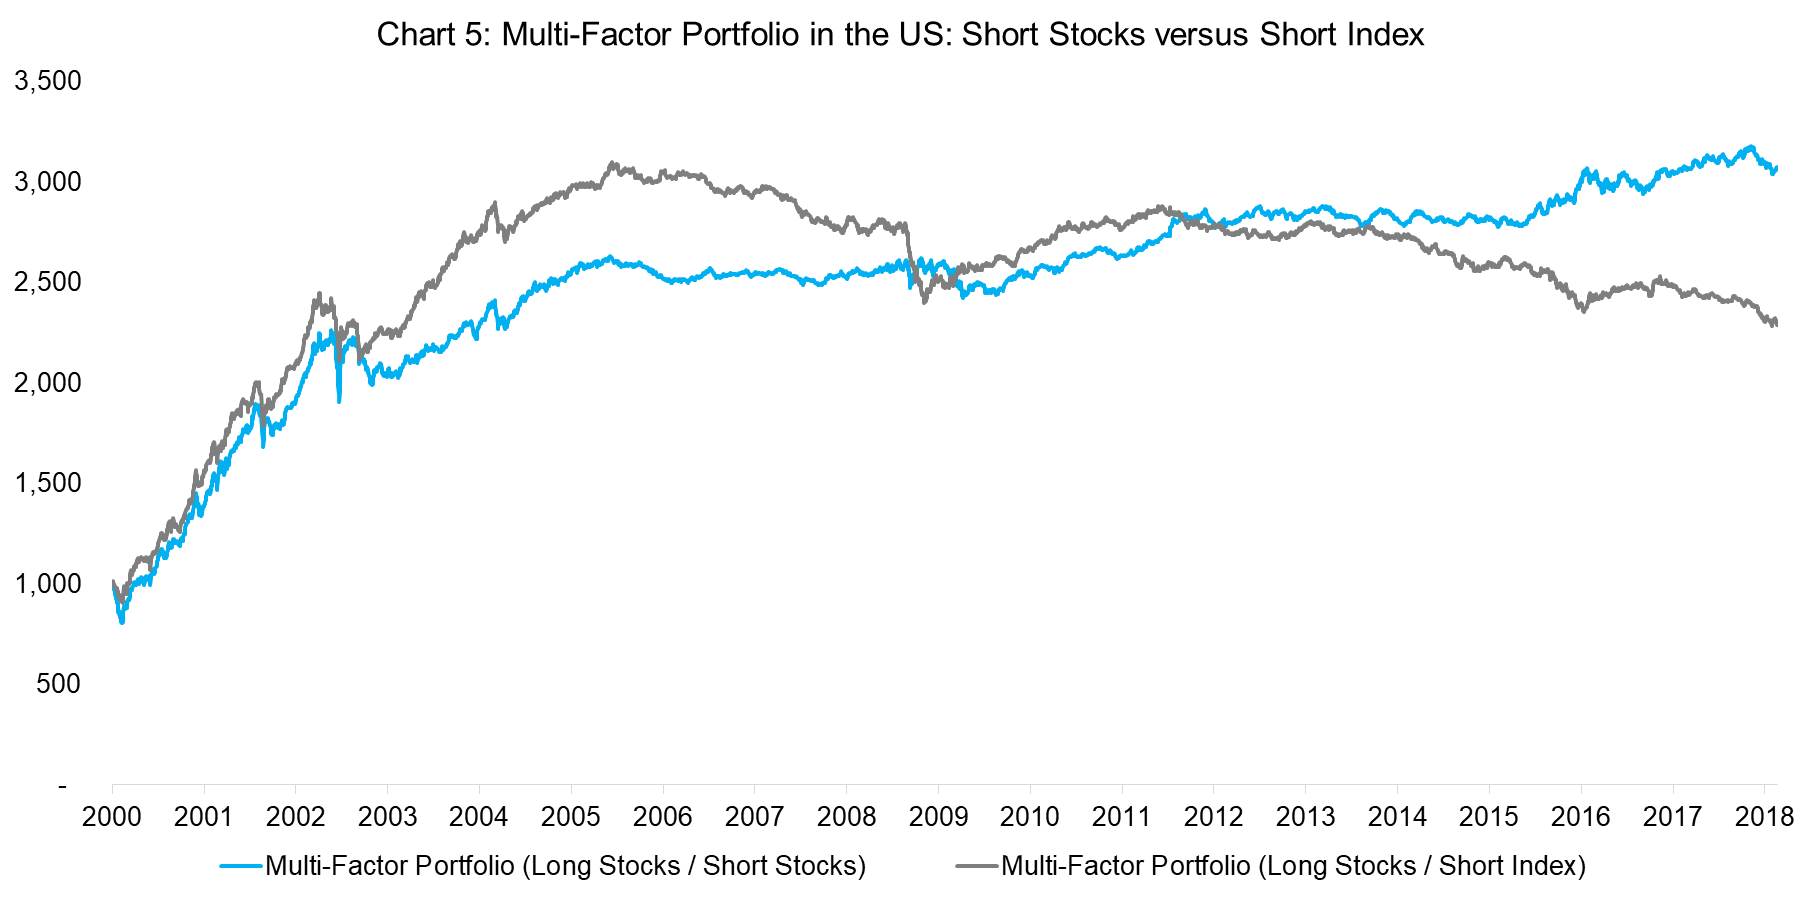 Multi-Factor US Short Stocks versus Short Index